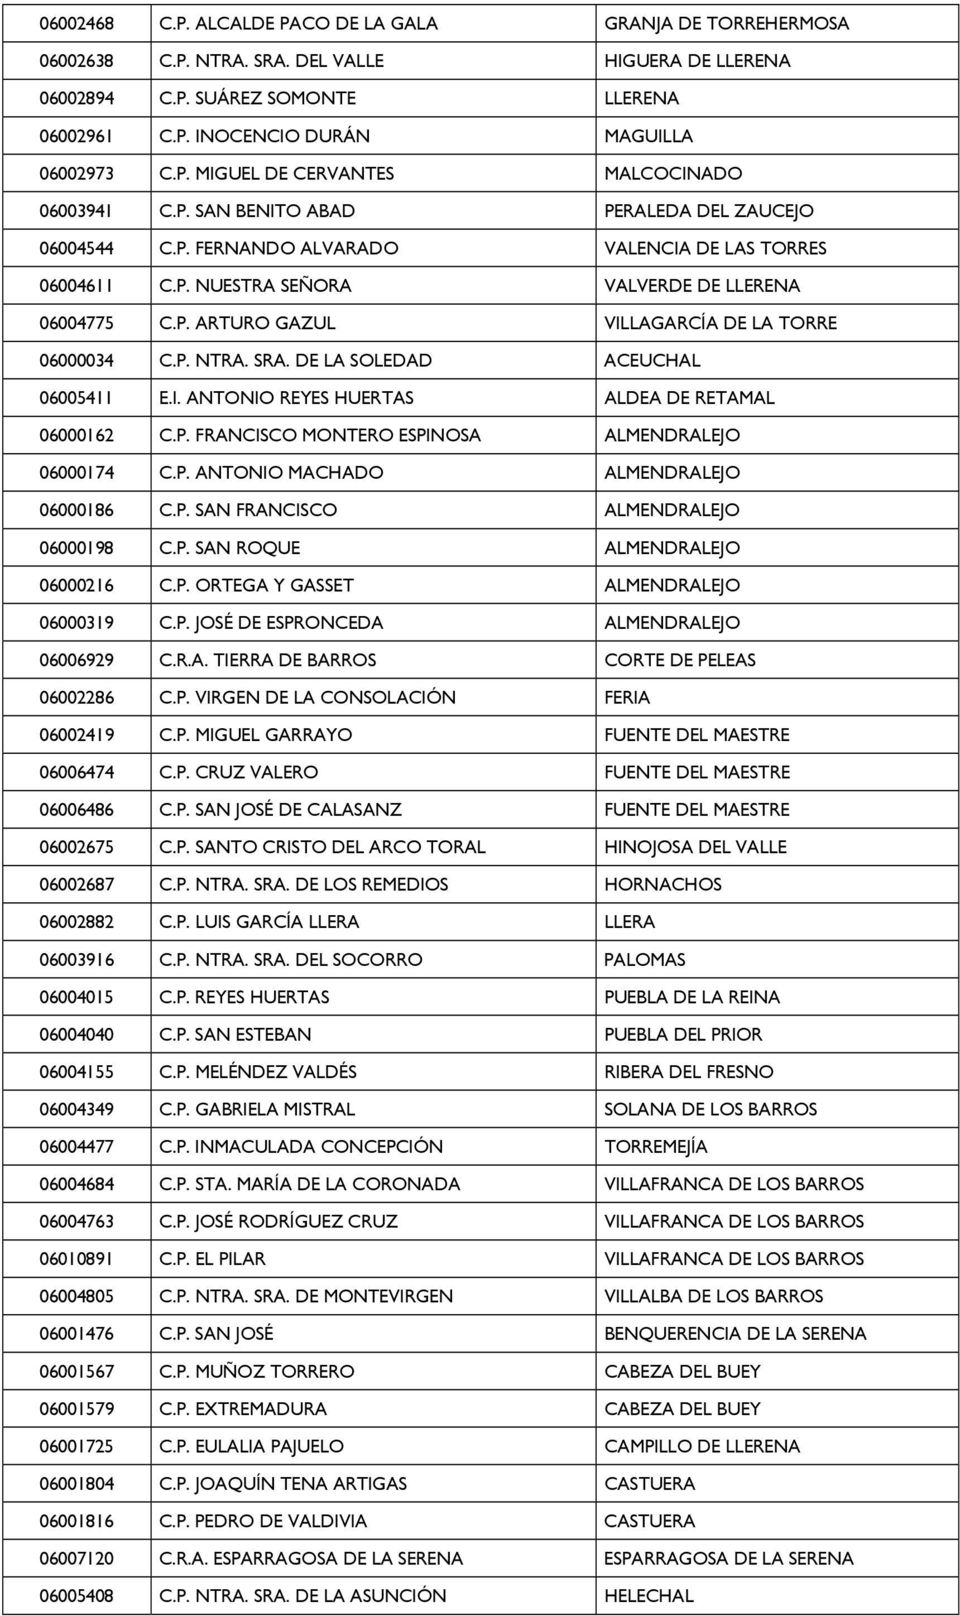 P. ARTURO GAZUL VILLAGARCÍA DE LA TORRE 06000034 C.P. NTRA. SRA. DE LA SOLEDAD ACEUCHAL 06005411 E.I. ANTONIO REYES HUERTAS ALDEA DE RETAMAL 06000162 C.P. FRANCISCO MONTERO ESPINOSA ALMENDRALEJO 06000174 C.